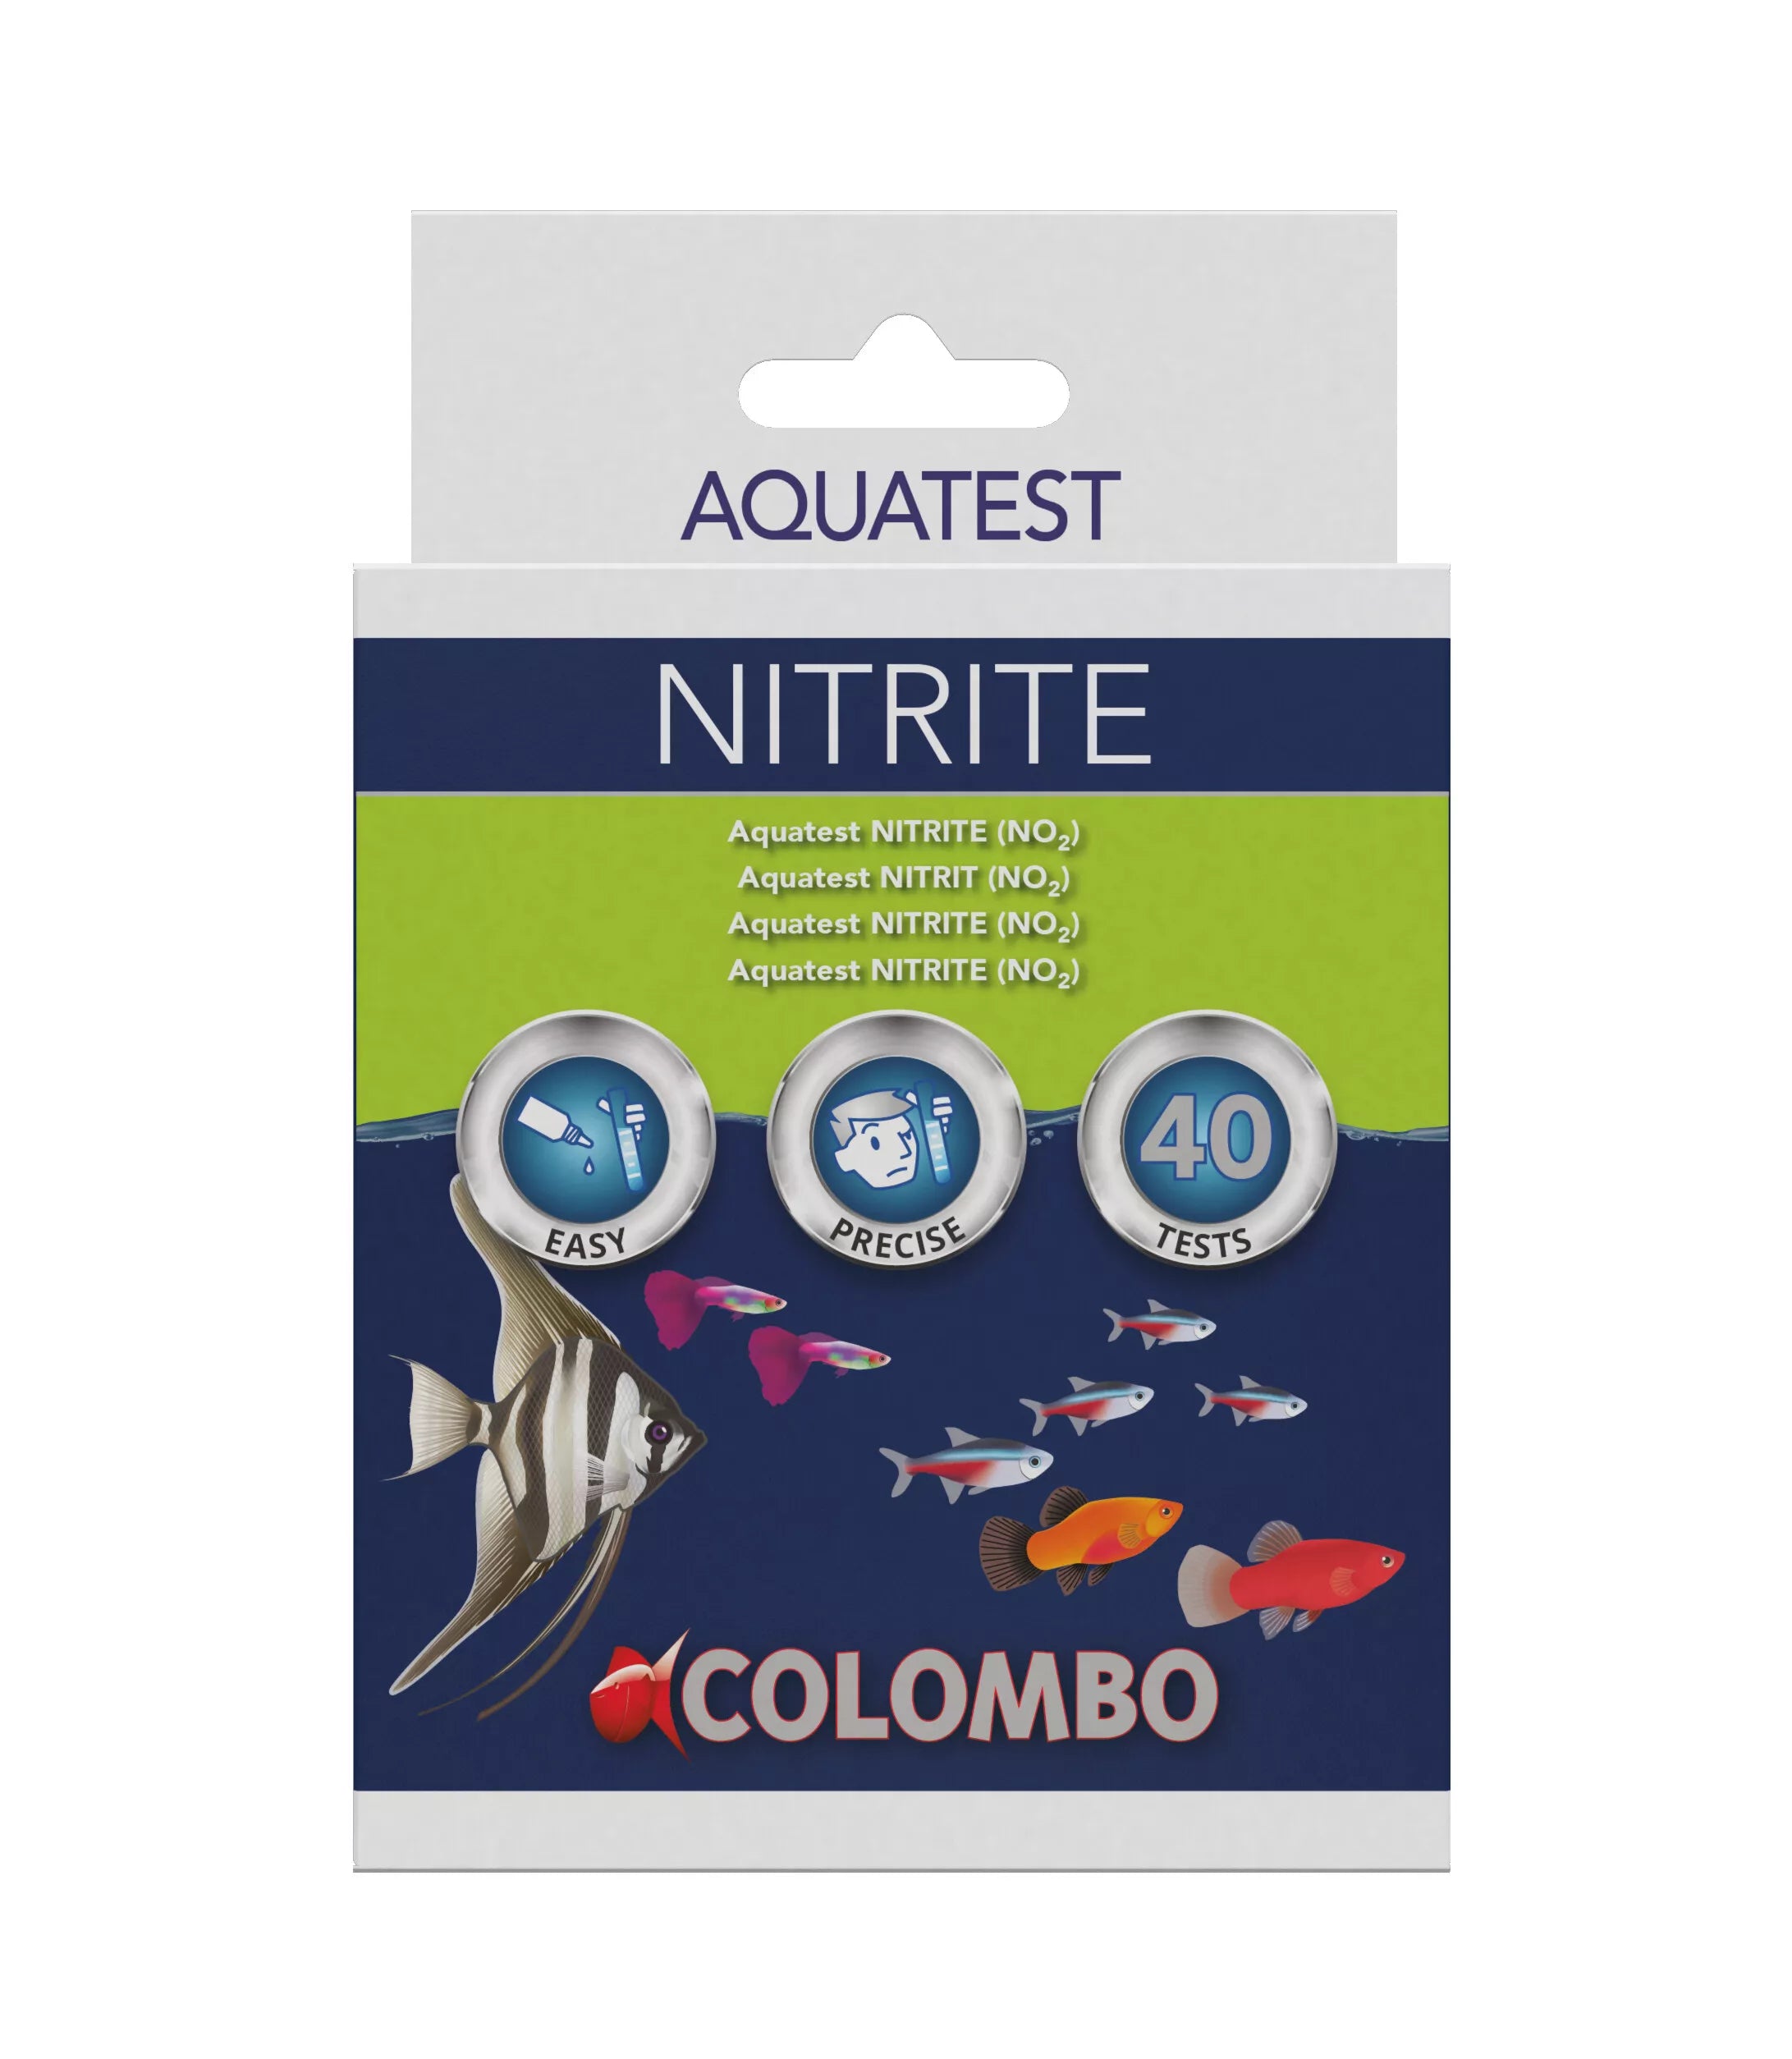 Colombo Freshwater Aquatest Nitrite Test Kit